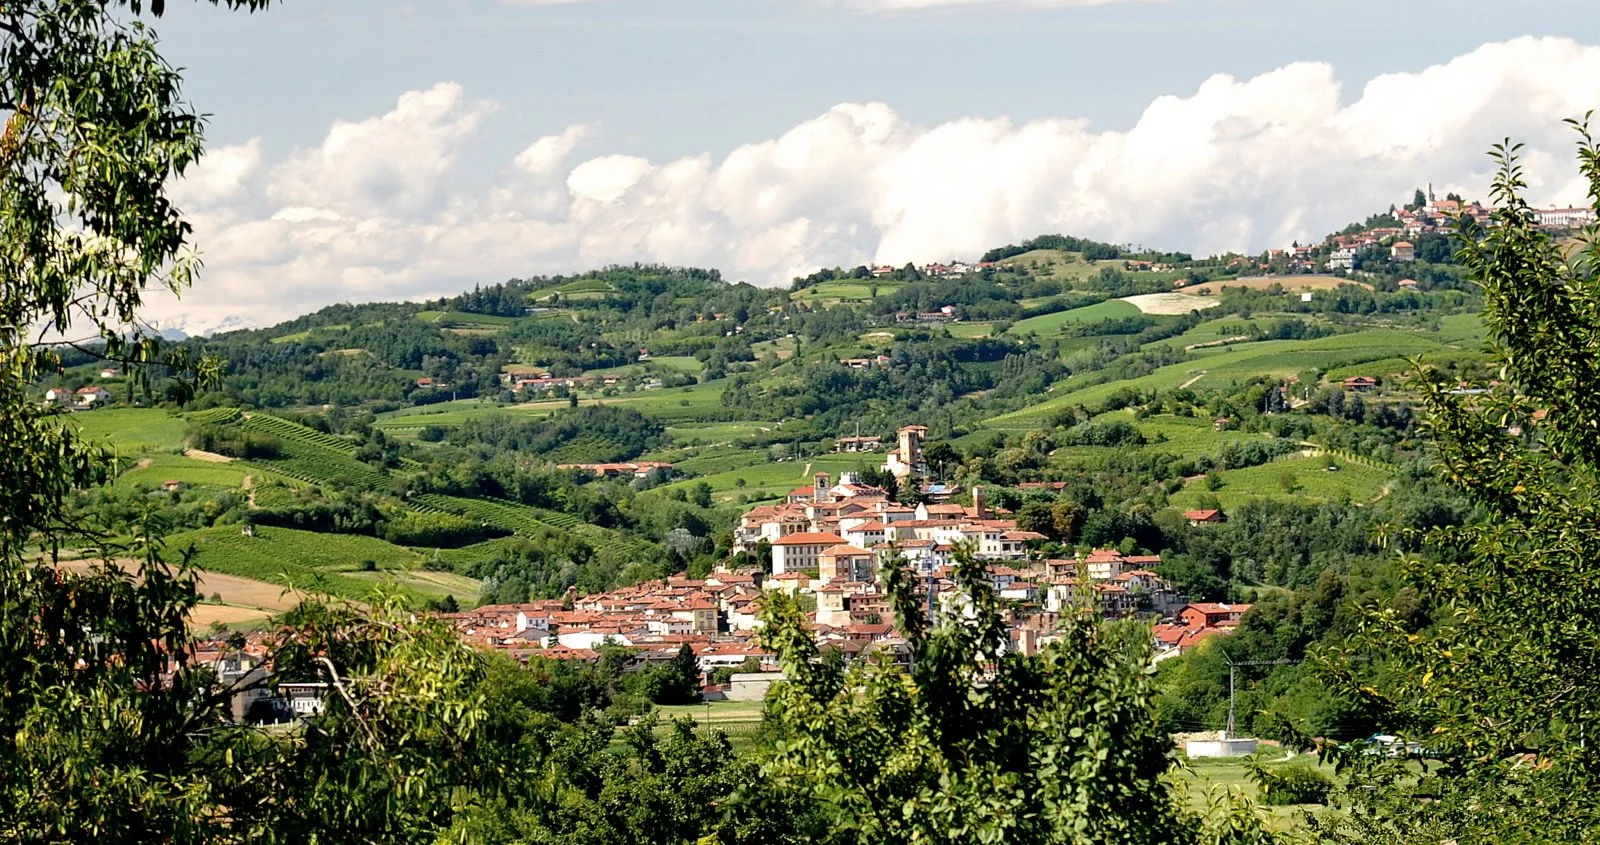 Image of Castelnuovo Don Bosco